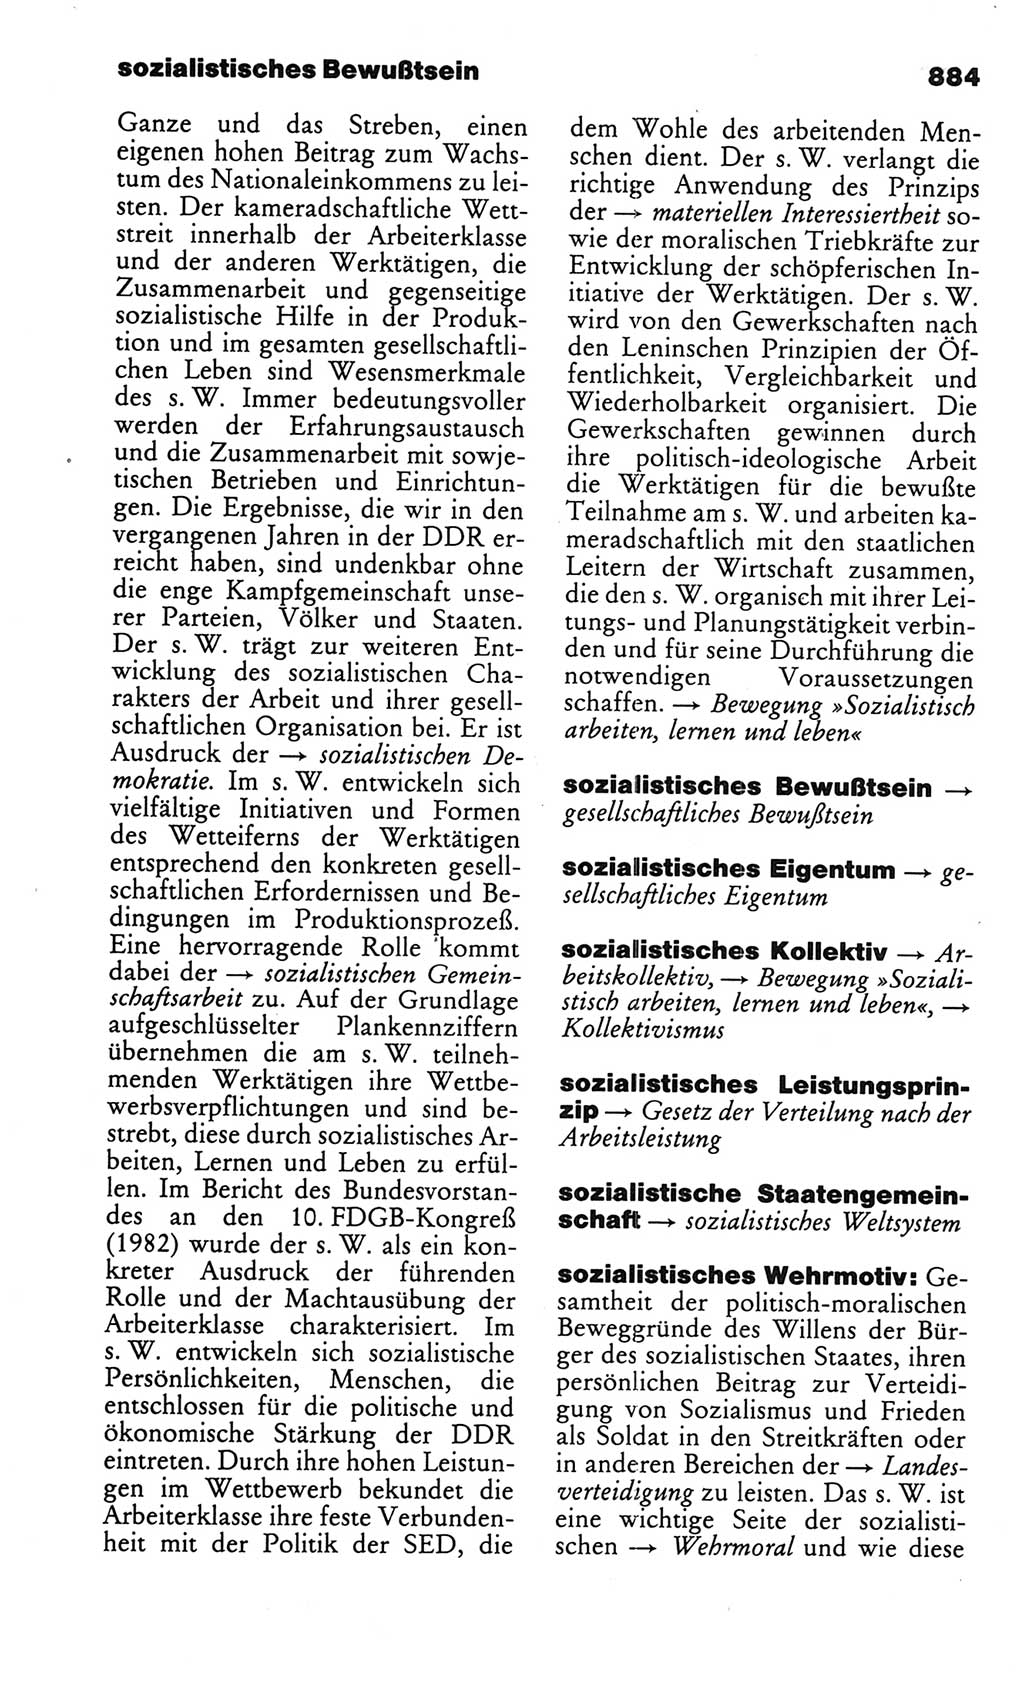 Kleines politisches Wörterbuch [Deutsche Demokratische Republik (DDR)] 1986, Seite 884 (Kl. pol. Wb. DDR 1986, S. 884)